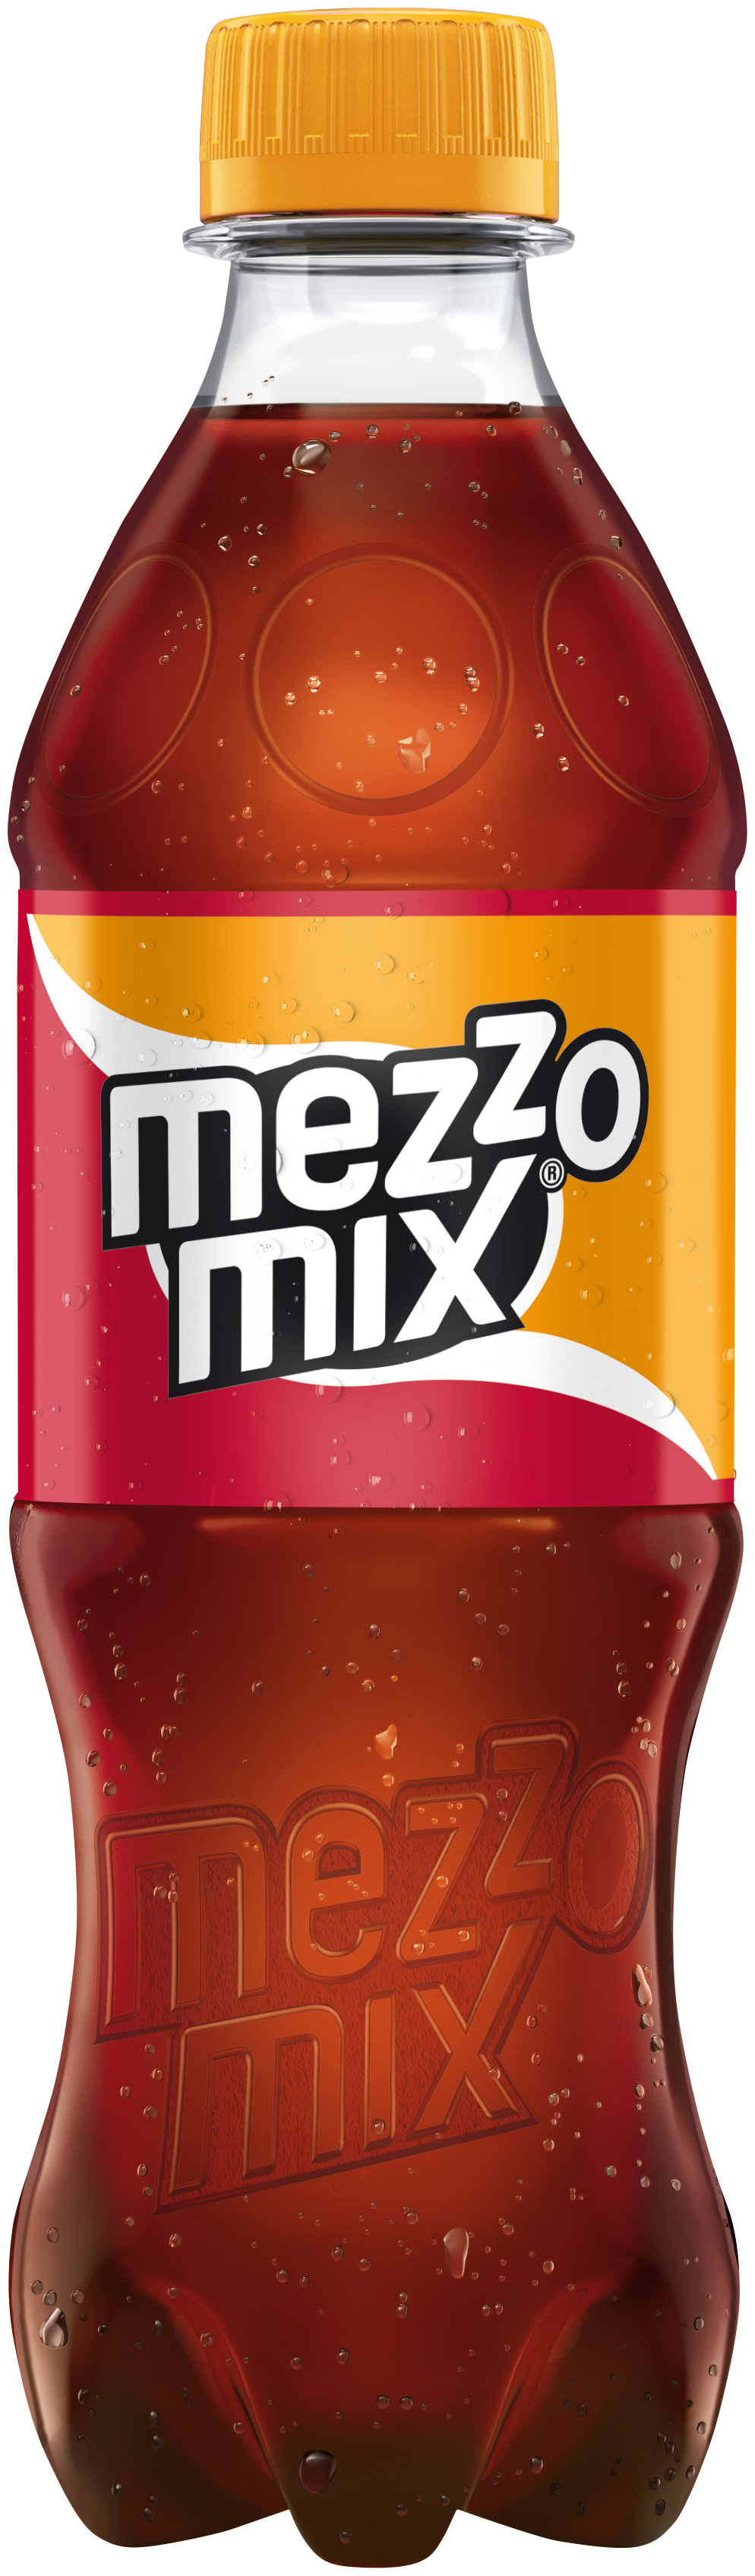 Mezzo Mix 12x0,5L DPG